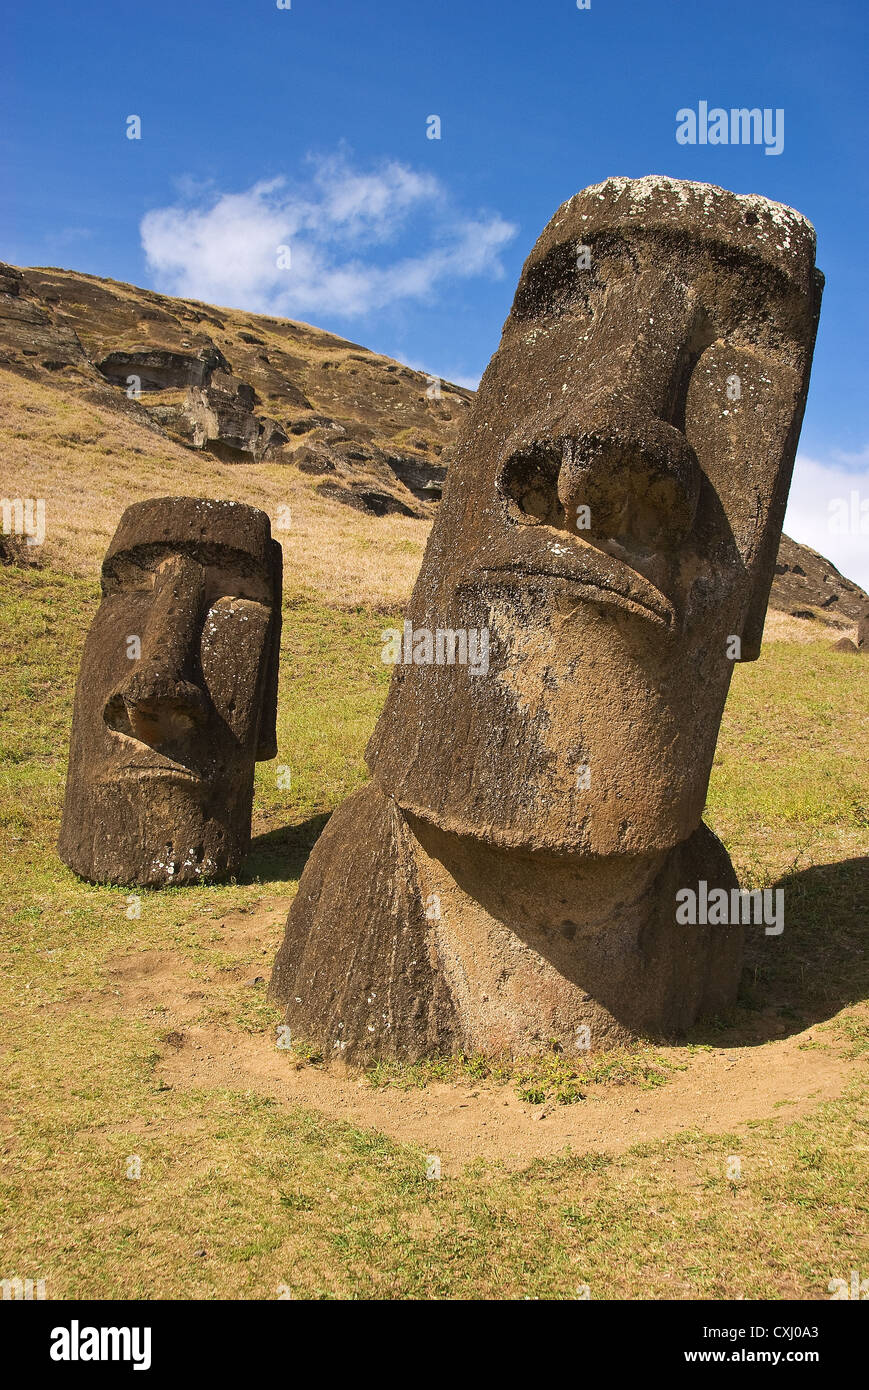 Elk198-5291v Chile, Easter Island, Rano Raraku, moai statues Stock Photo